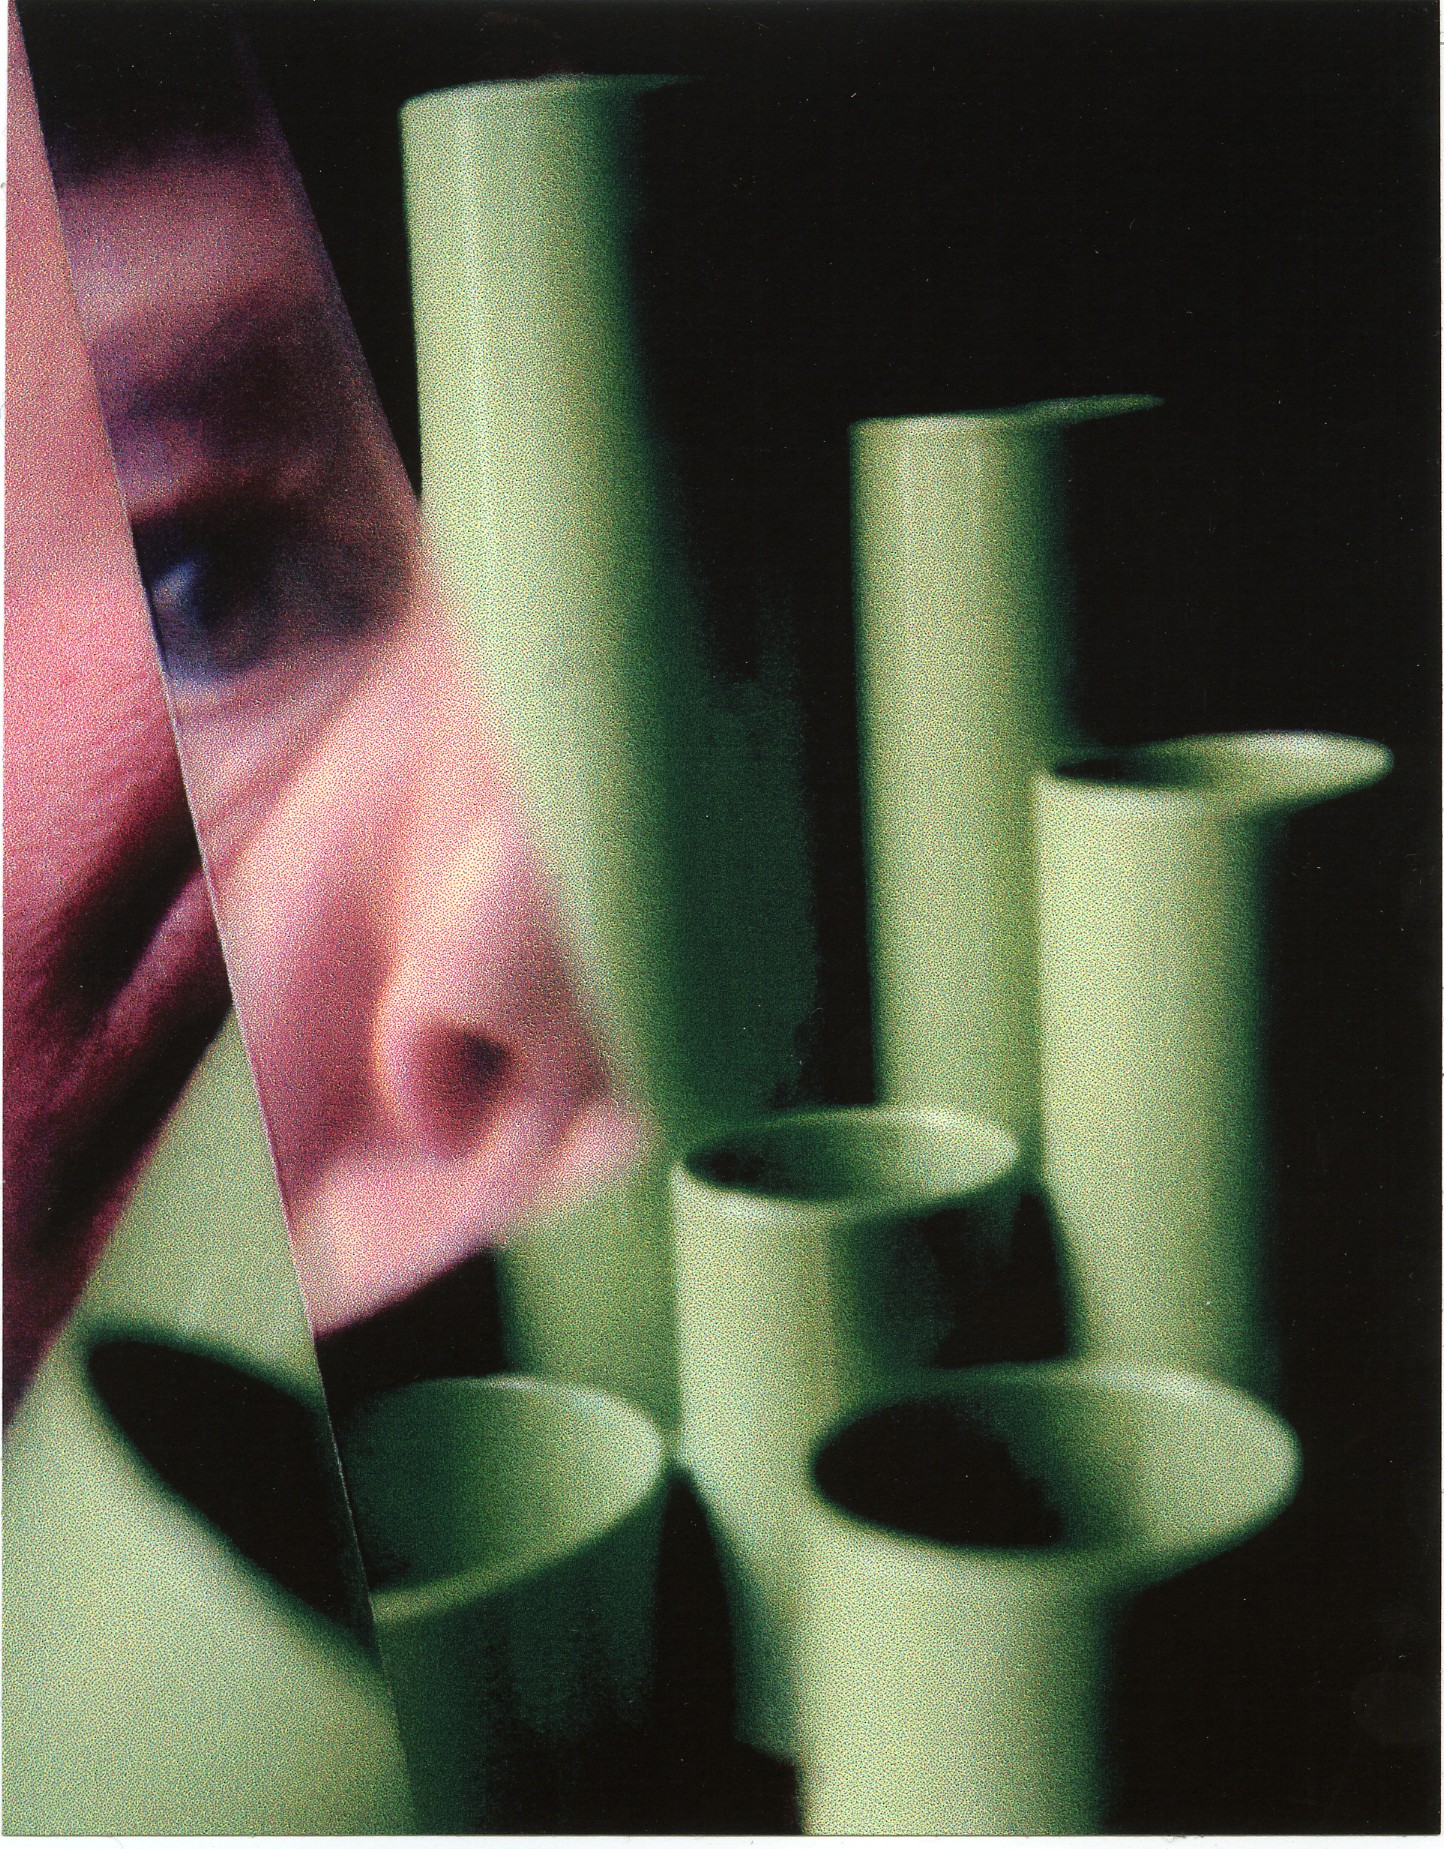 fragmentarische Fotografie eines Gesichts und grüner geometrischer Formen